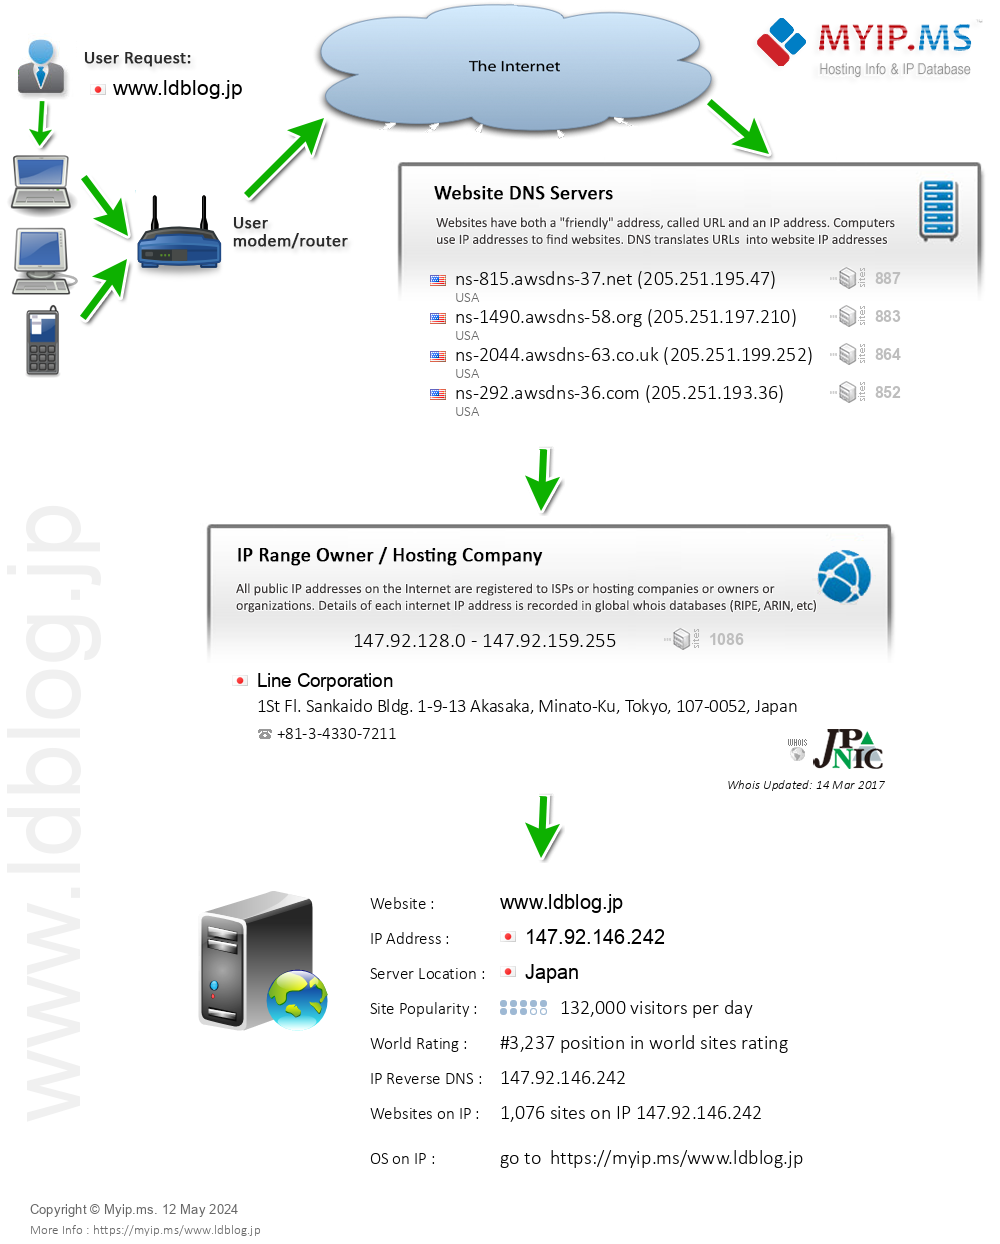 Ldblog.jp - Website Hosting Visual IP Diagram